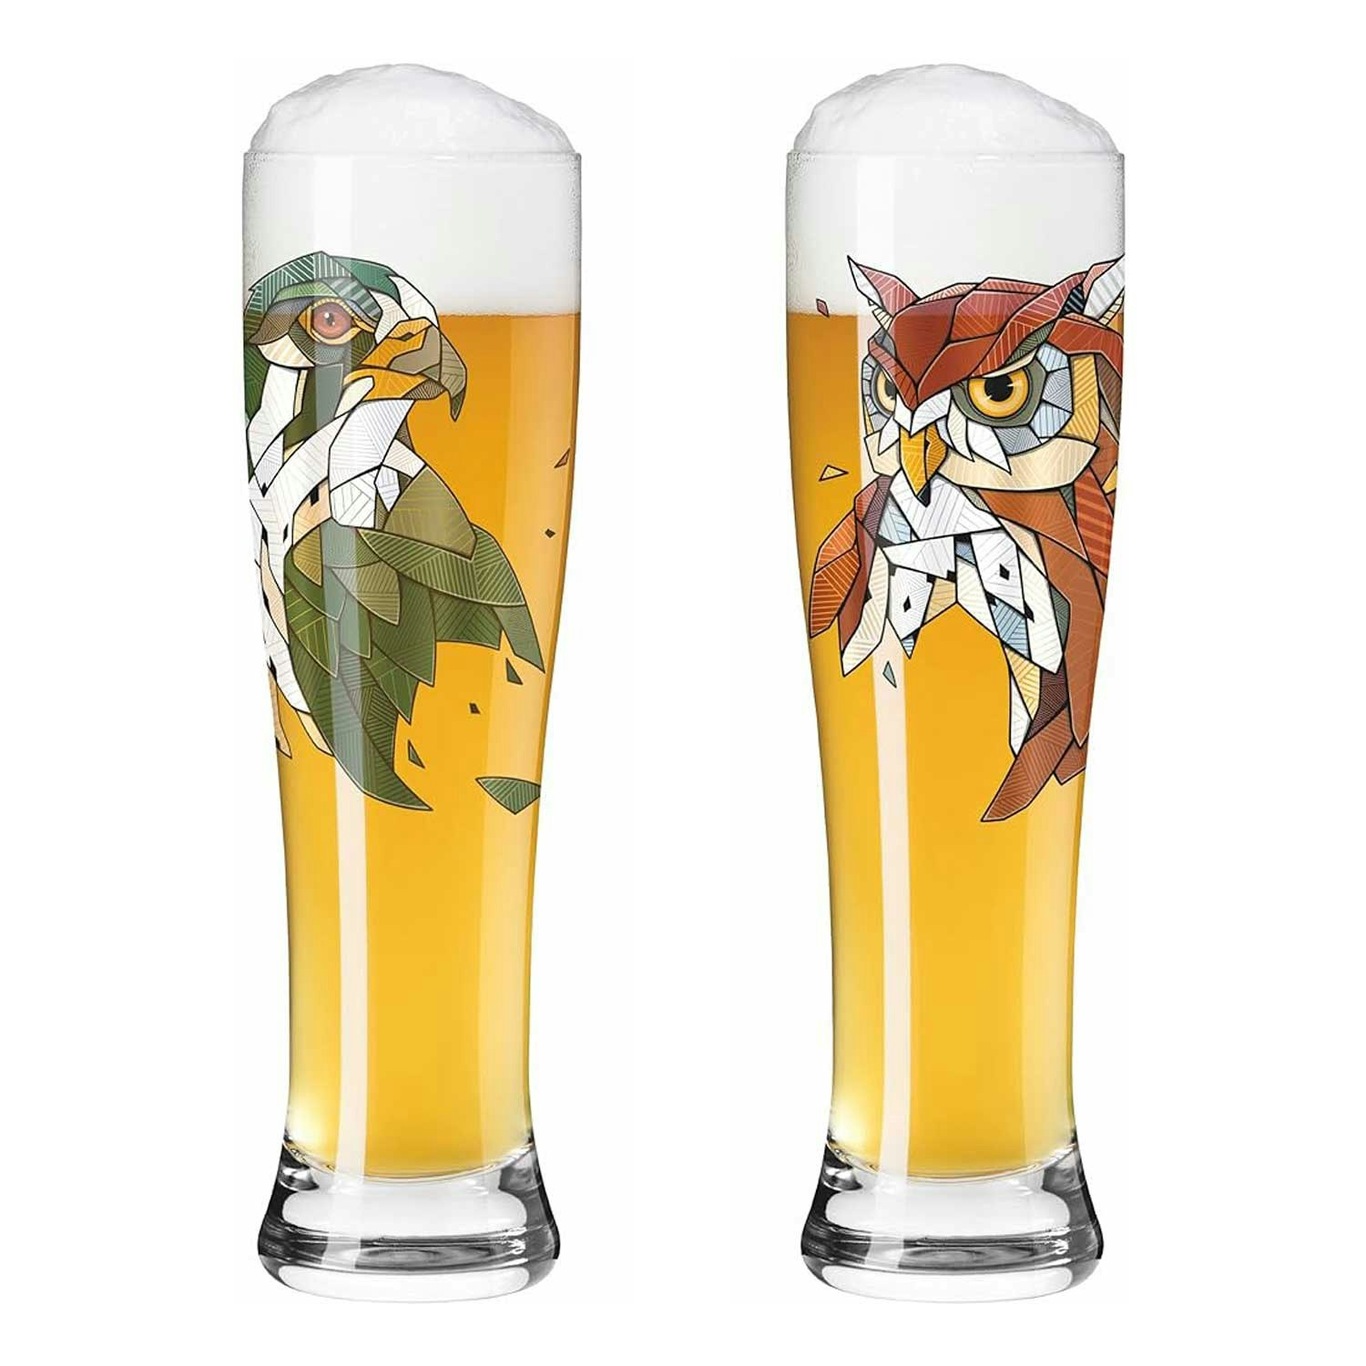 Brauchzeit Beer Glass 2-pack, F23